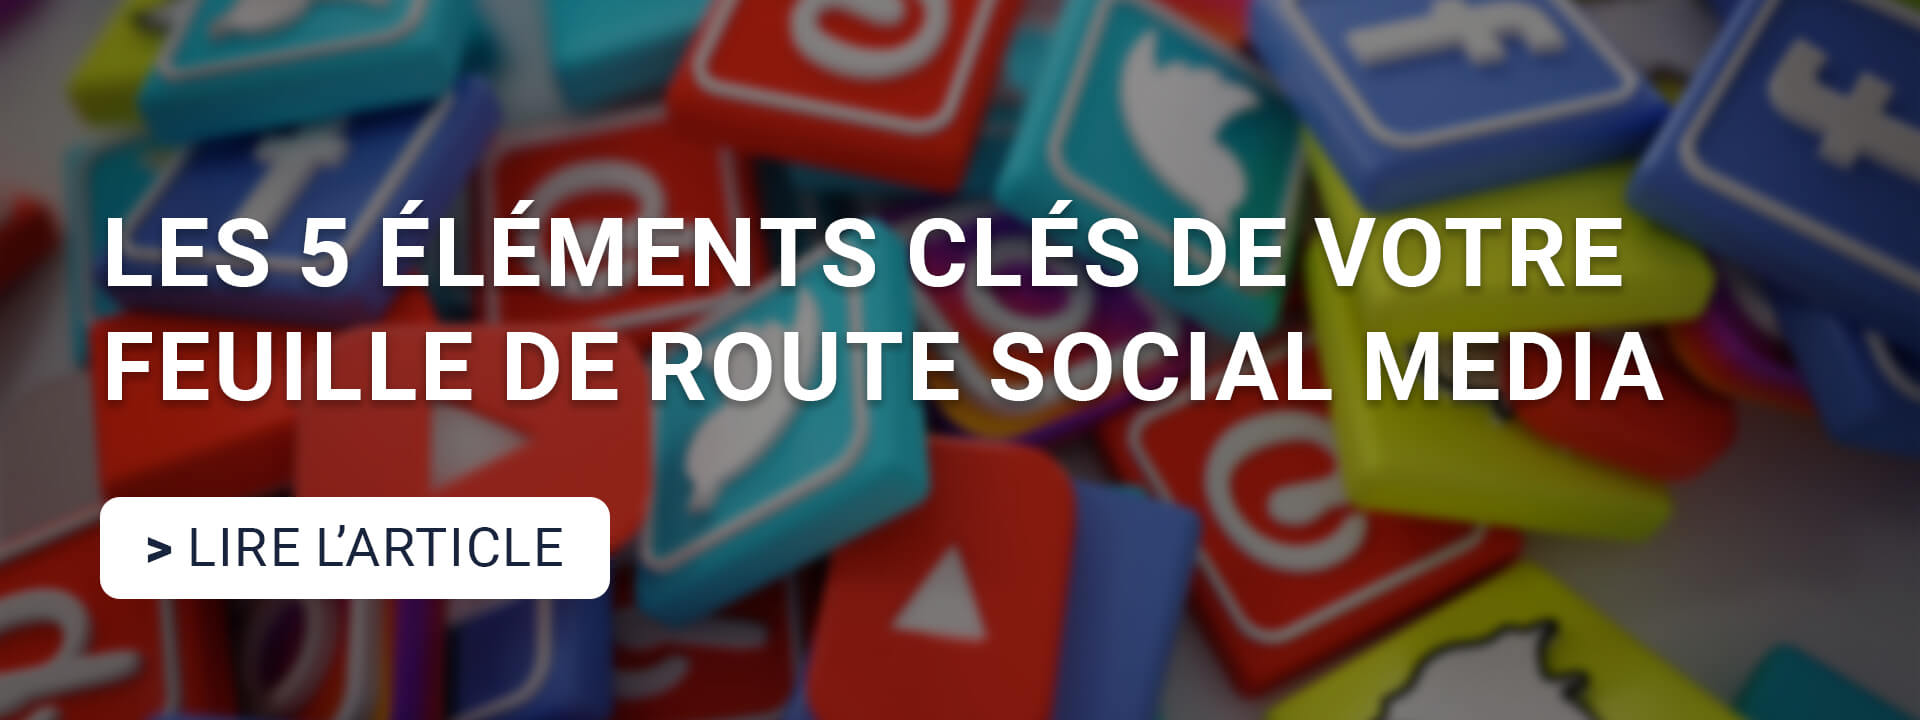 elements-cles-social-media-roadmap